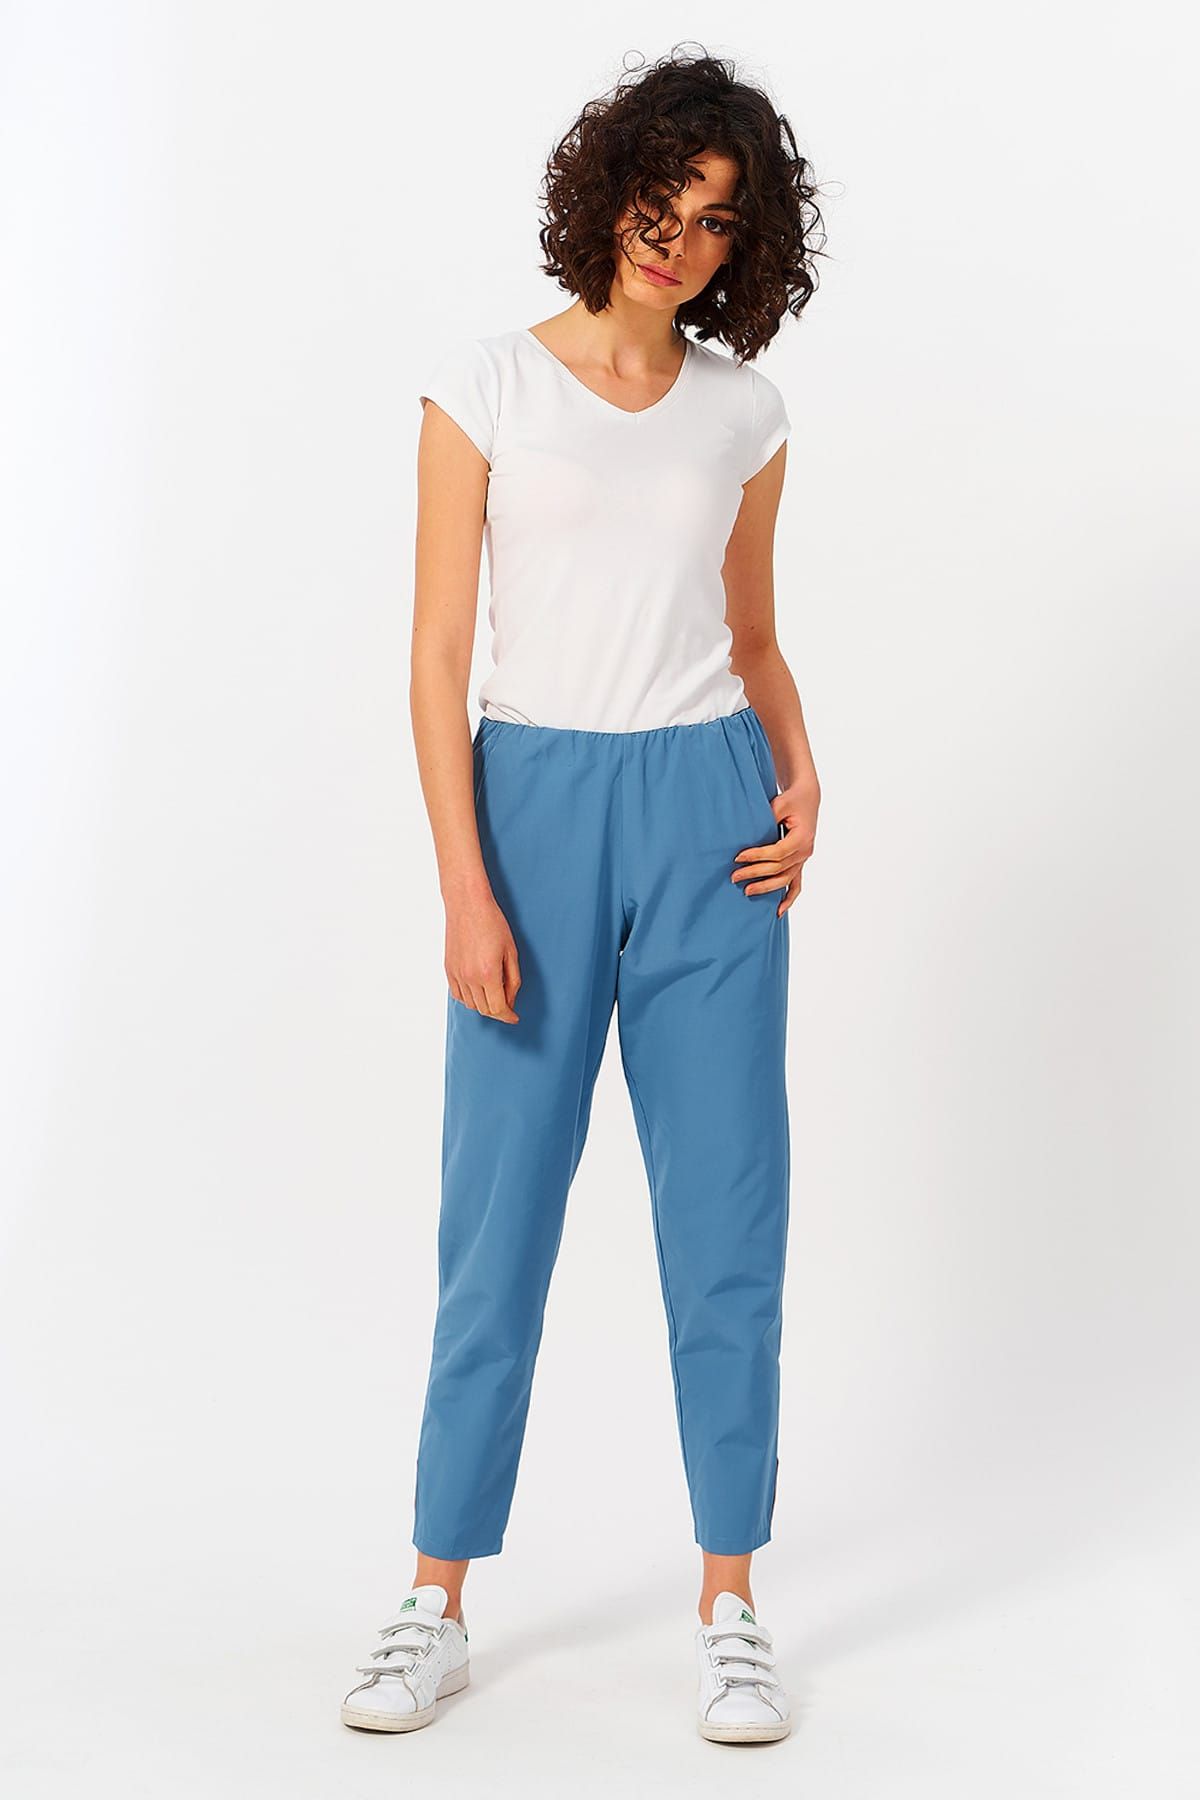 Mevra Kadın Mavi Beli Lastikli Pantolon T793